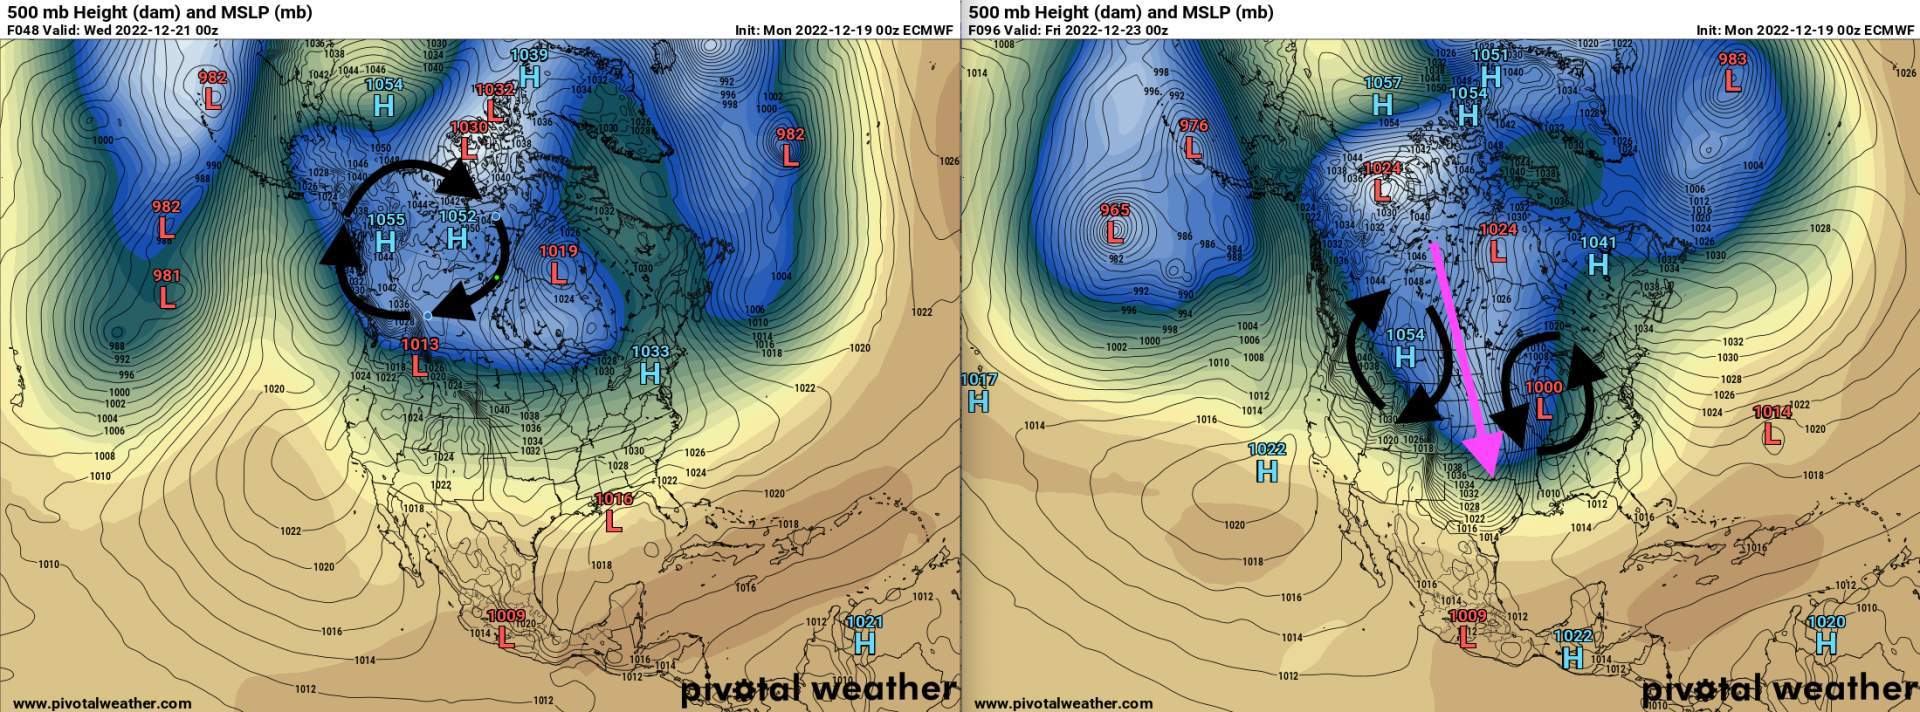 Fig. 1: Répartition des pressions sur l'Amérique du Nord de mercredi (à gauche) et vendredi (à droite). (Source : représentation adaptée de Pivotal Weather)